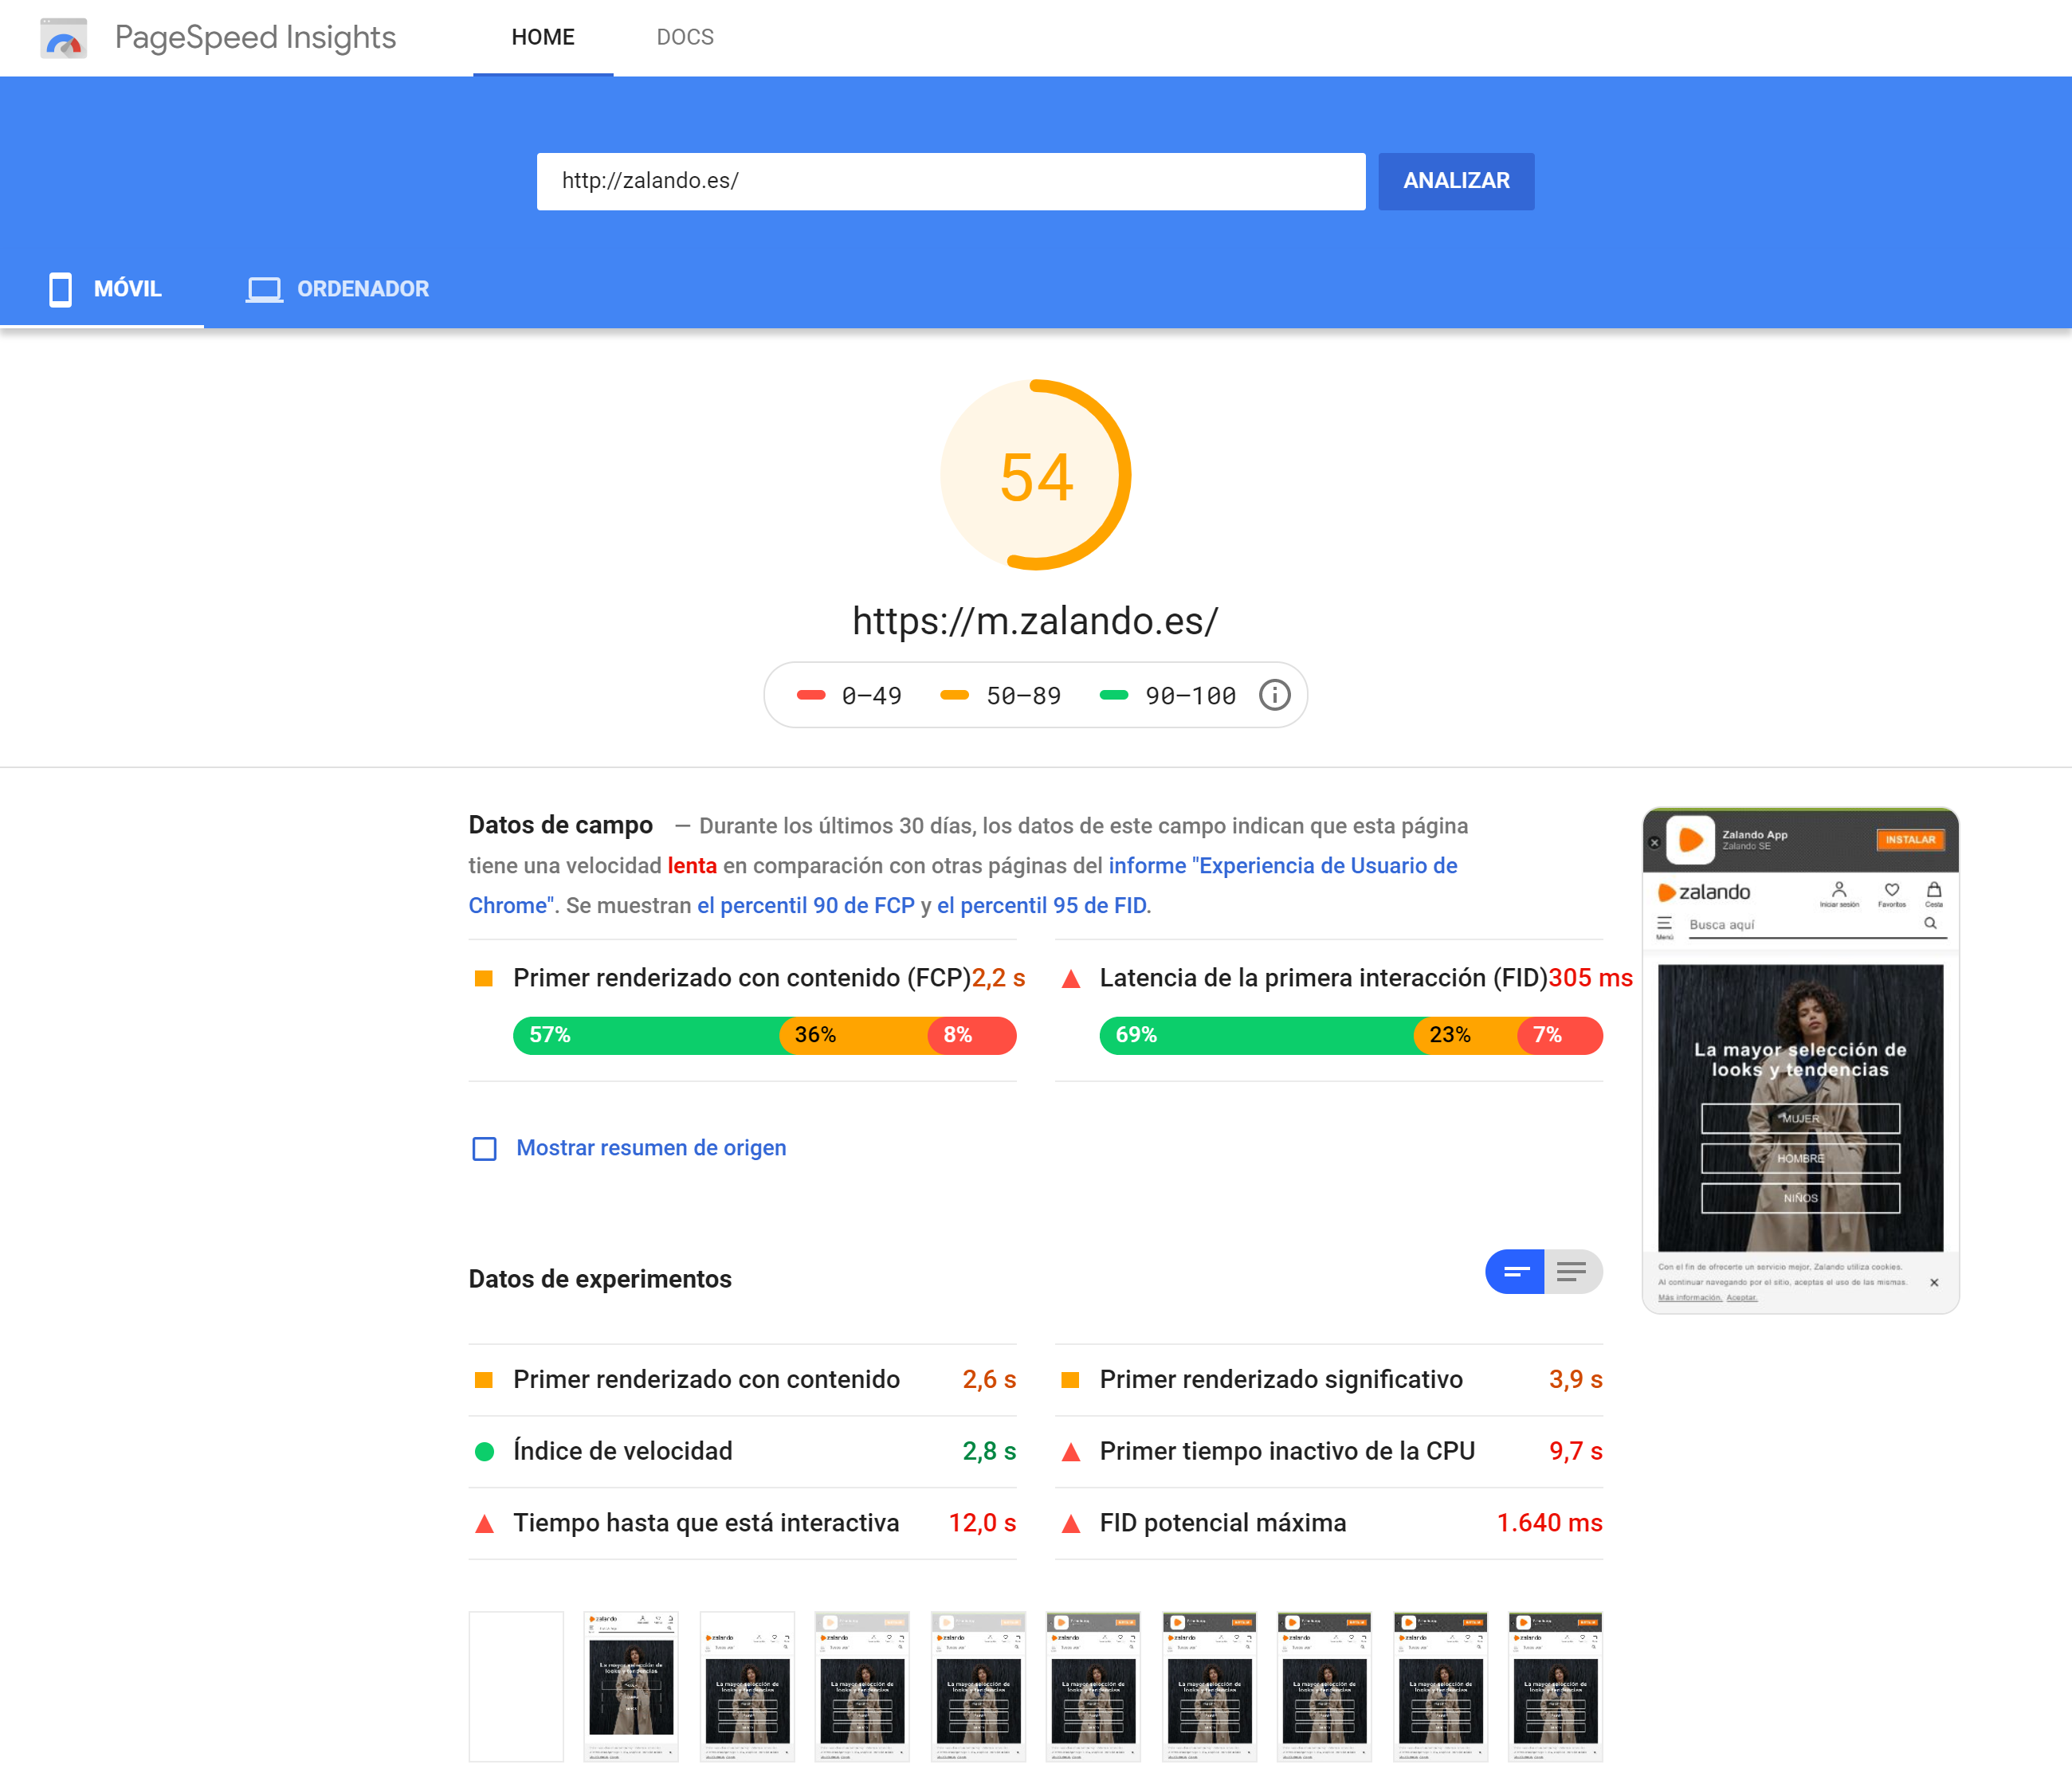 PageSpeed Insights de Google para el dominio zalando.es